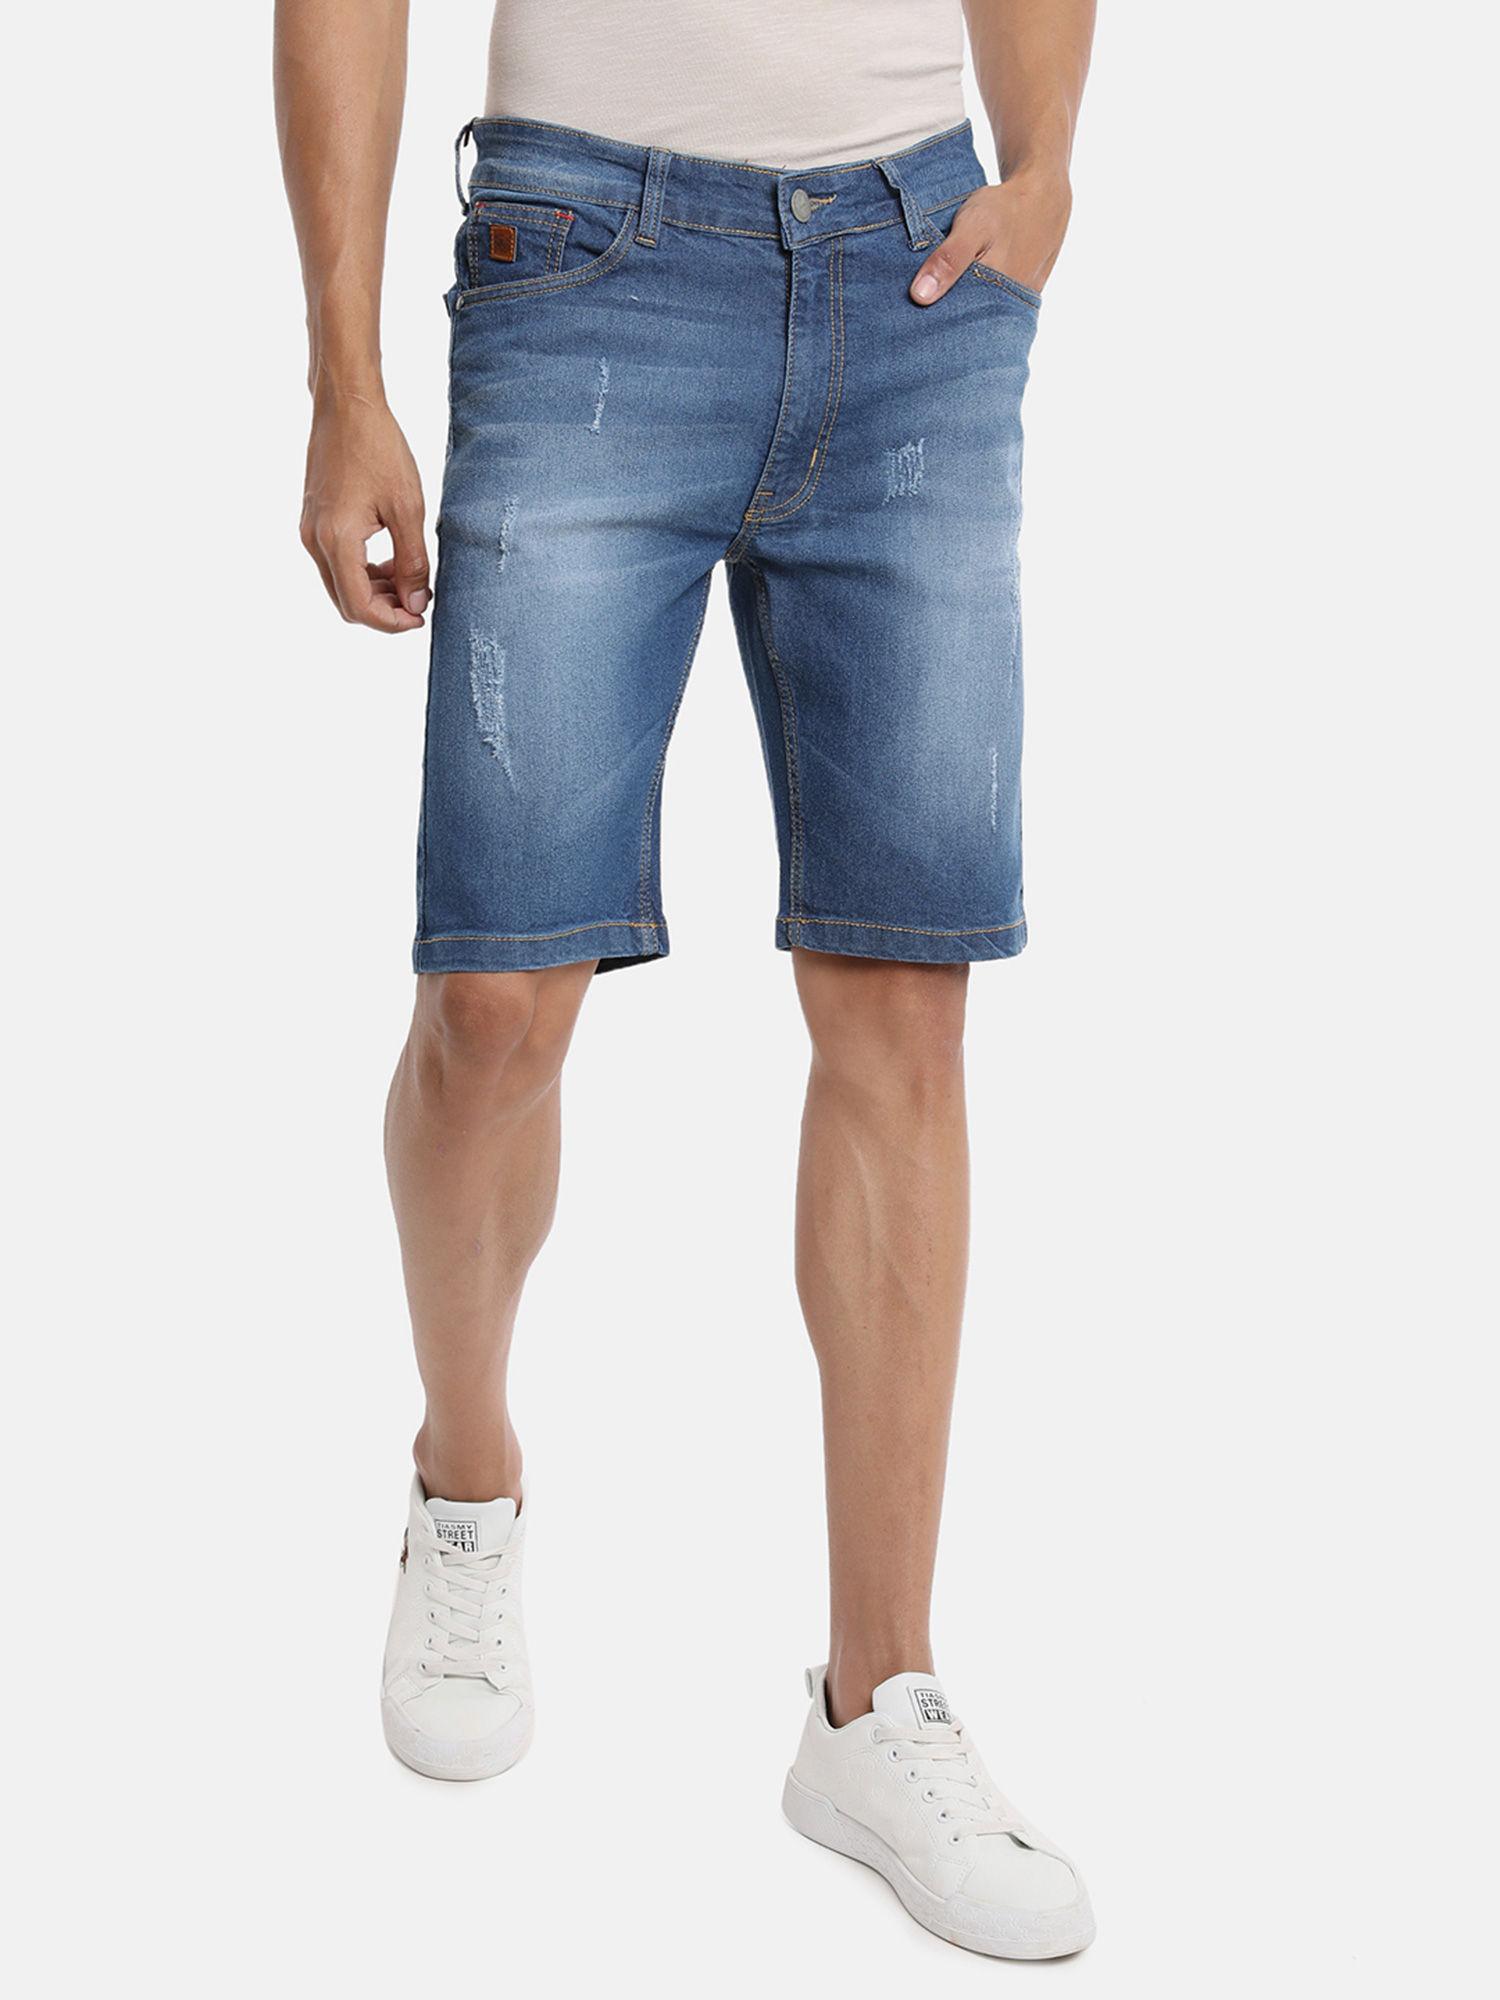 men solid stylish denim shorts